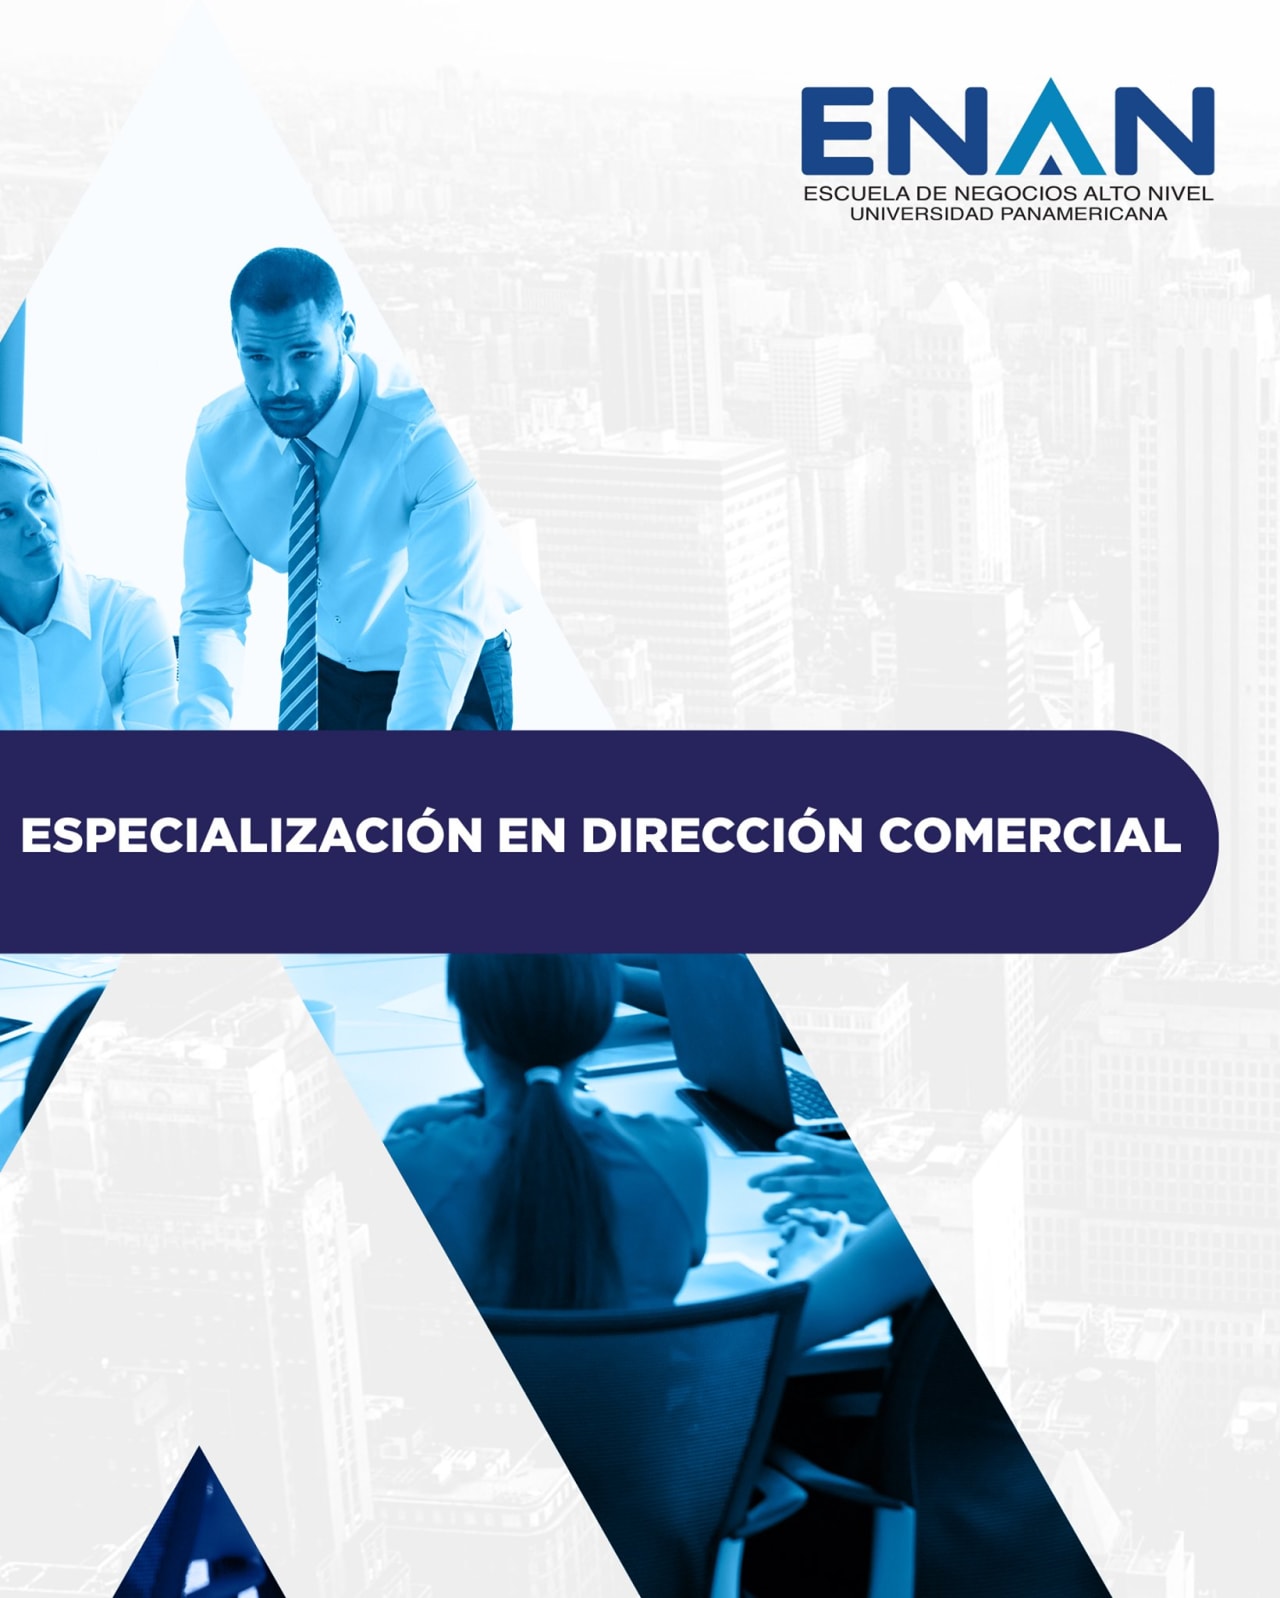 Escuela de Negocios Alto Nivel - Universidad Panamericana de Guatemala वाणिज्यिक प्रबंधन में विशेषज्ञता